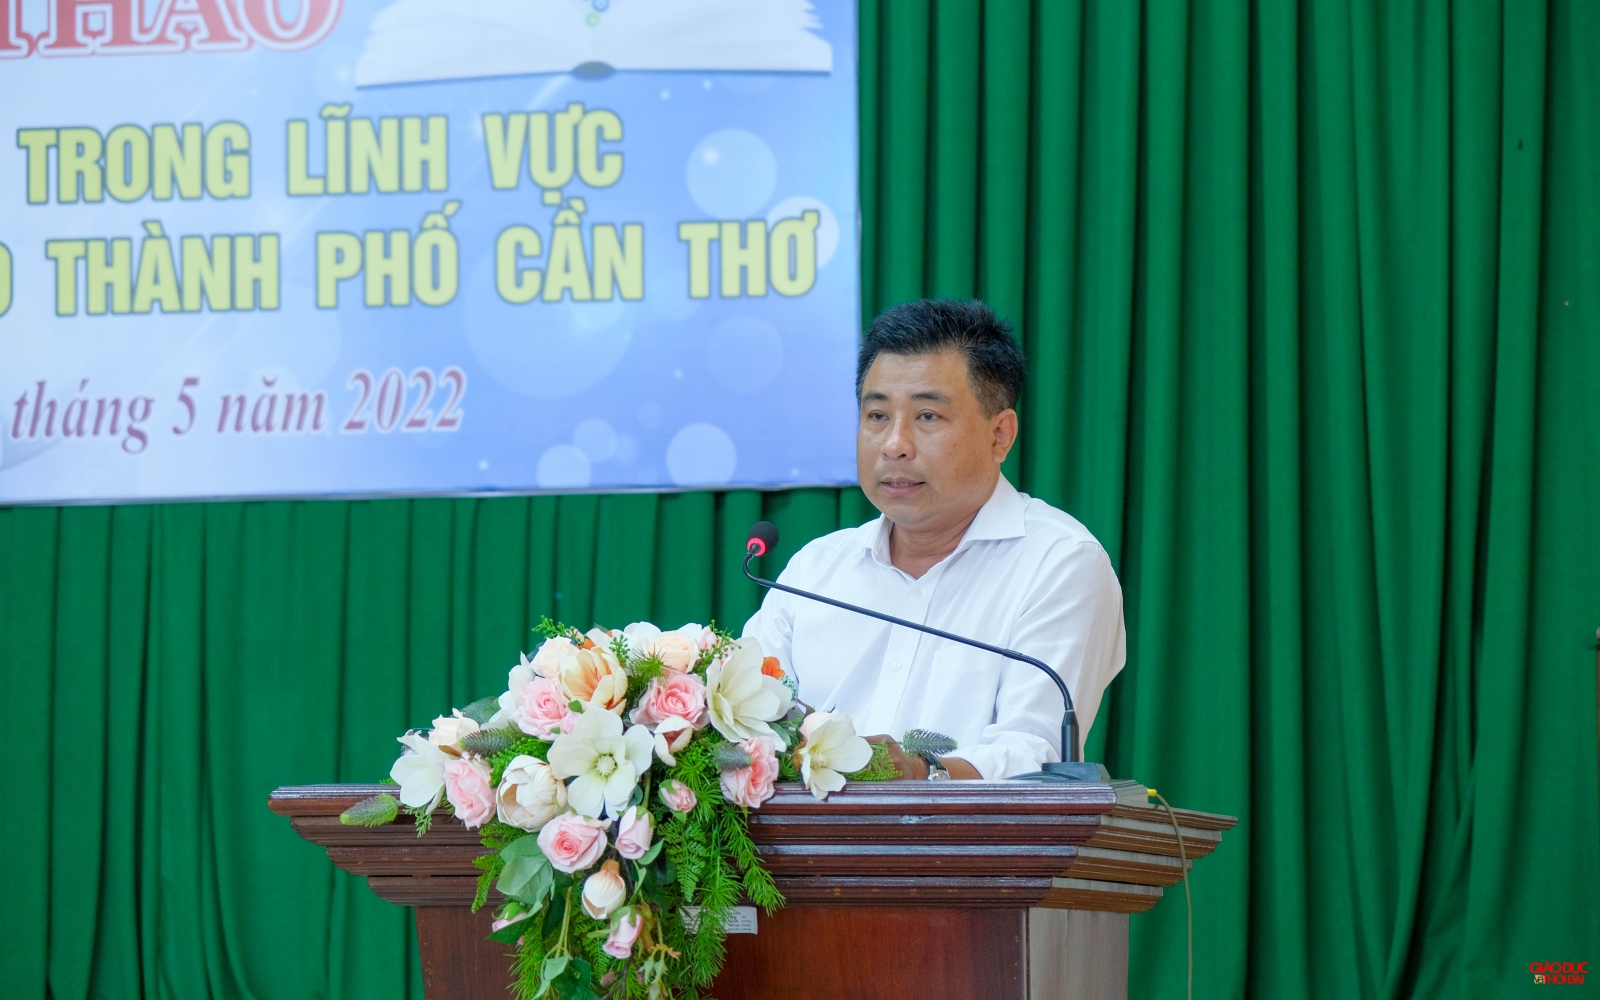 Ông Trương Thế Bảo, Phó Trưởng phòng GD&ĐT quận Ninh Kiều báo cáo kết quả chuyển đổi số tại địa phương.